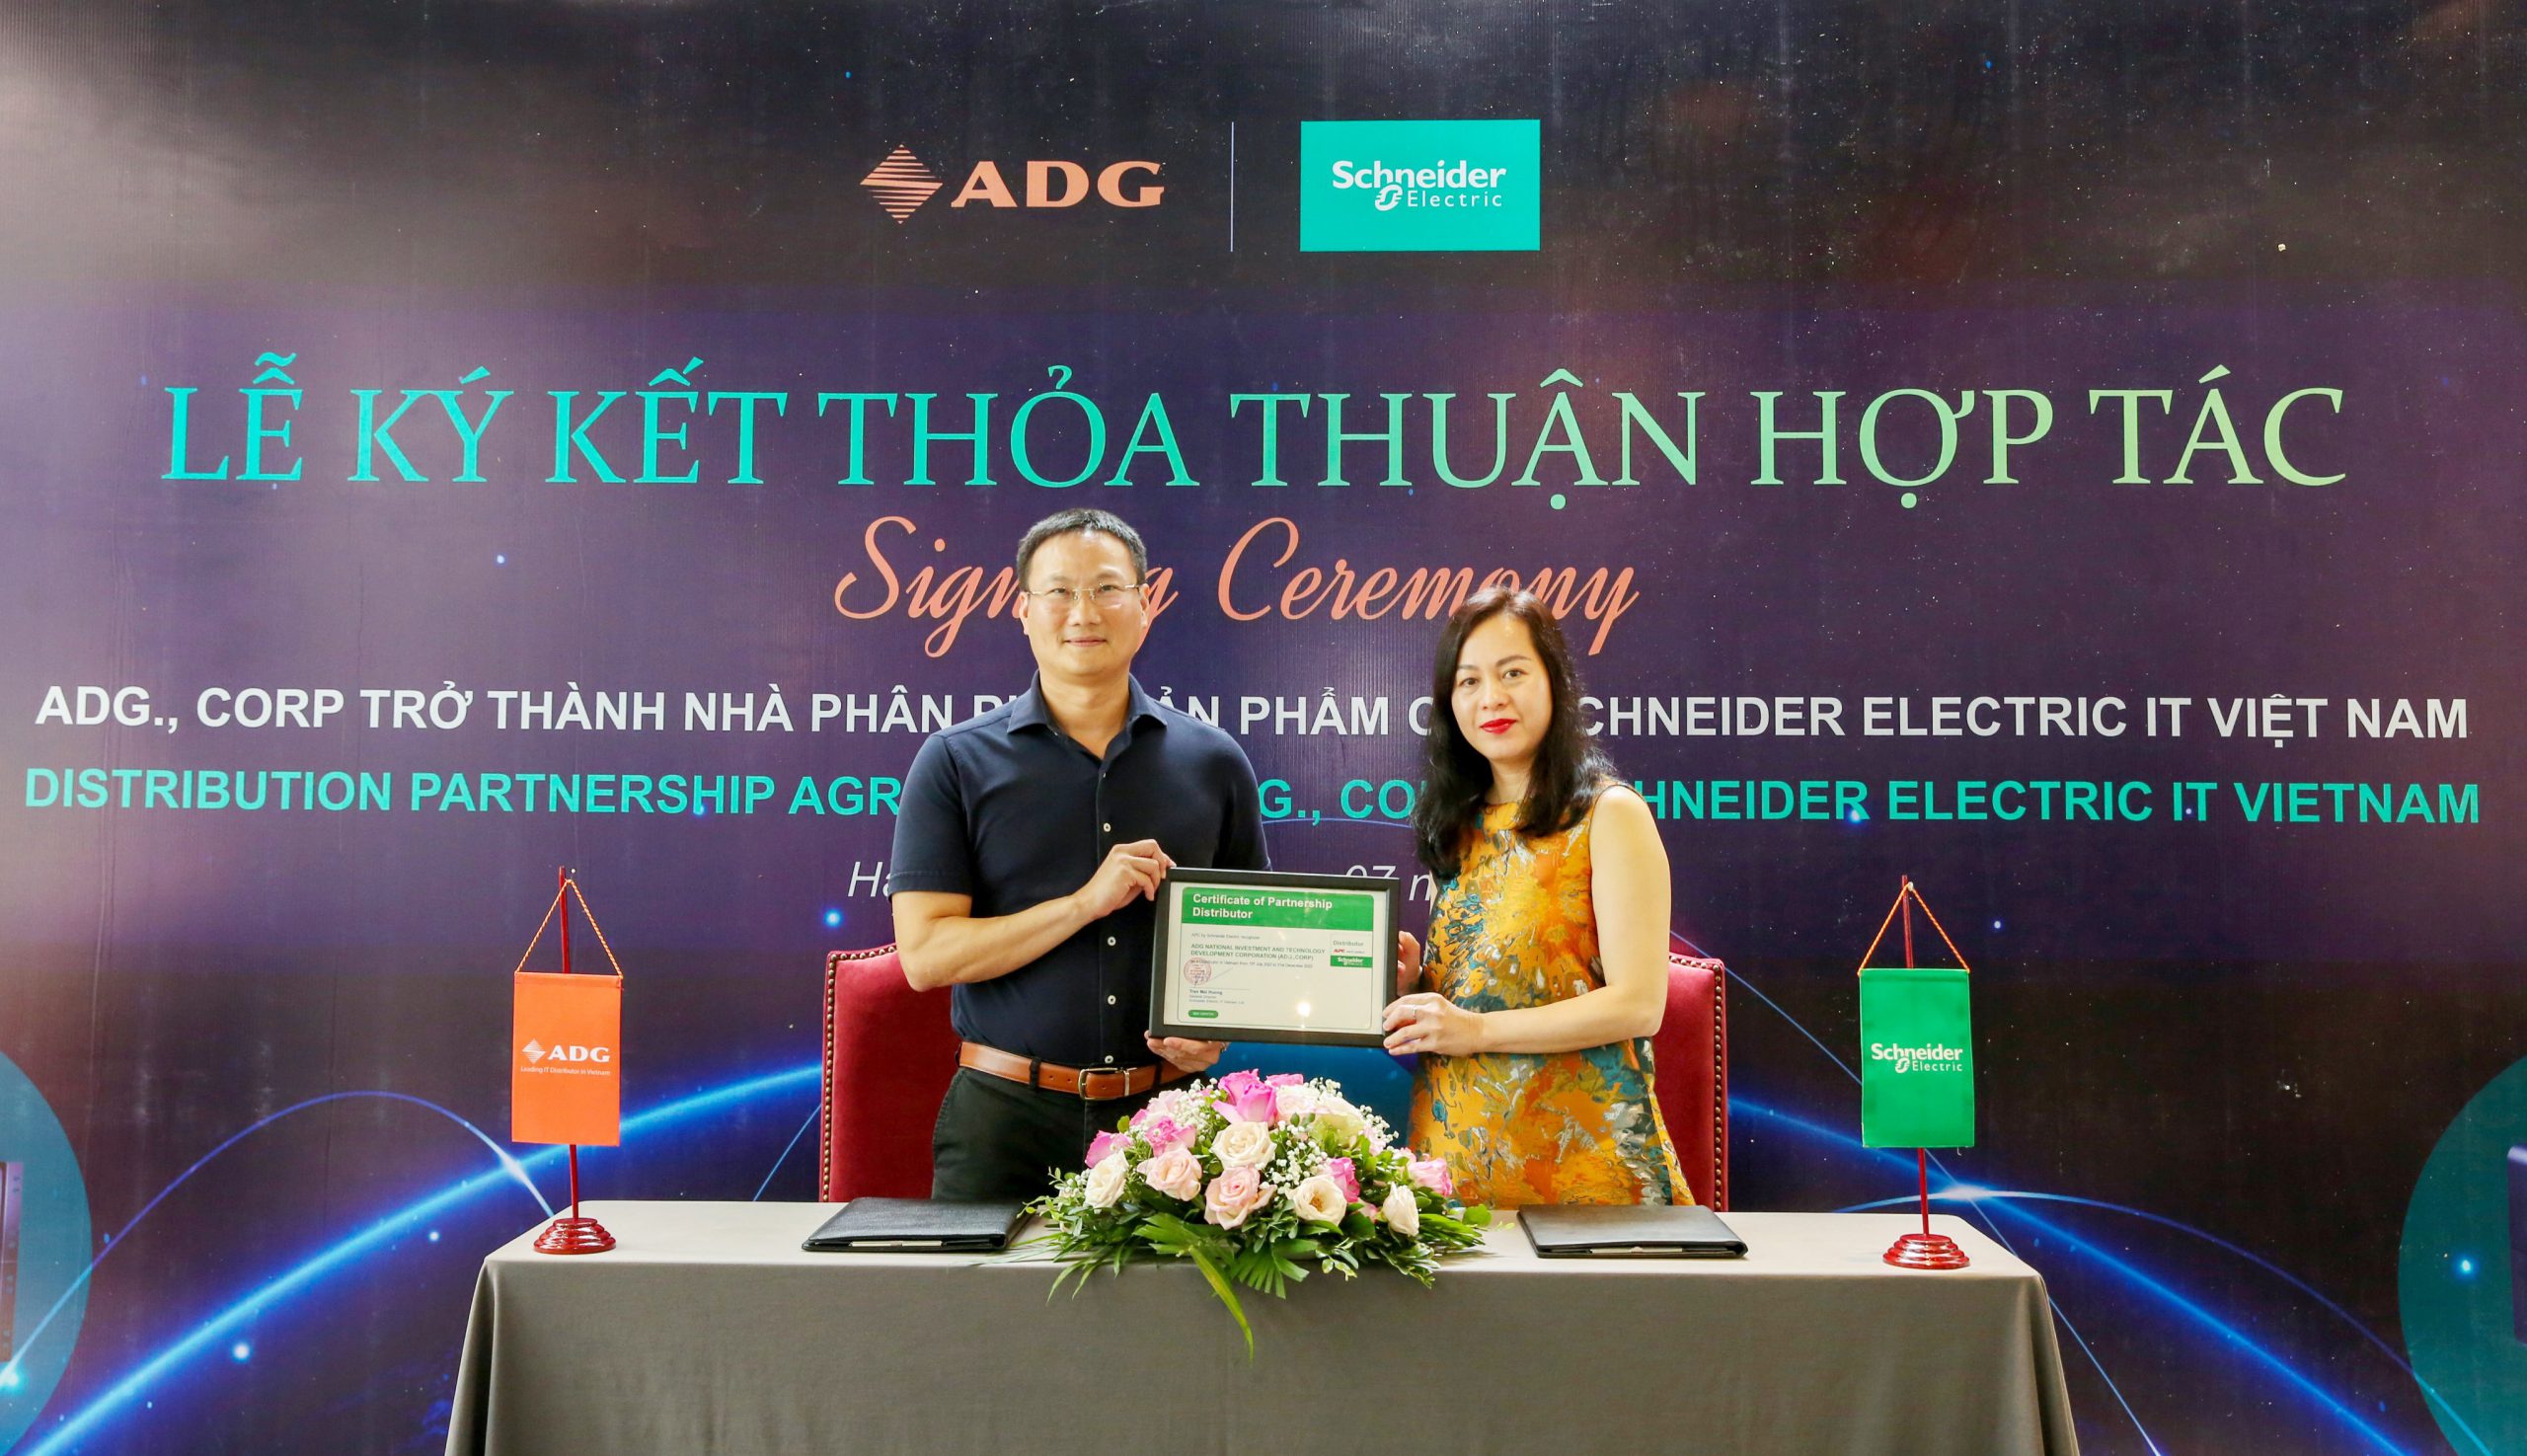  ADG chính thức trở thành Nhà phân phối của APC- Schneider Electric IT Việt Nam